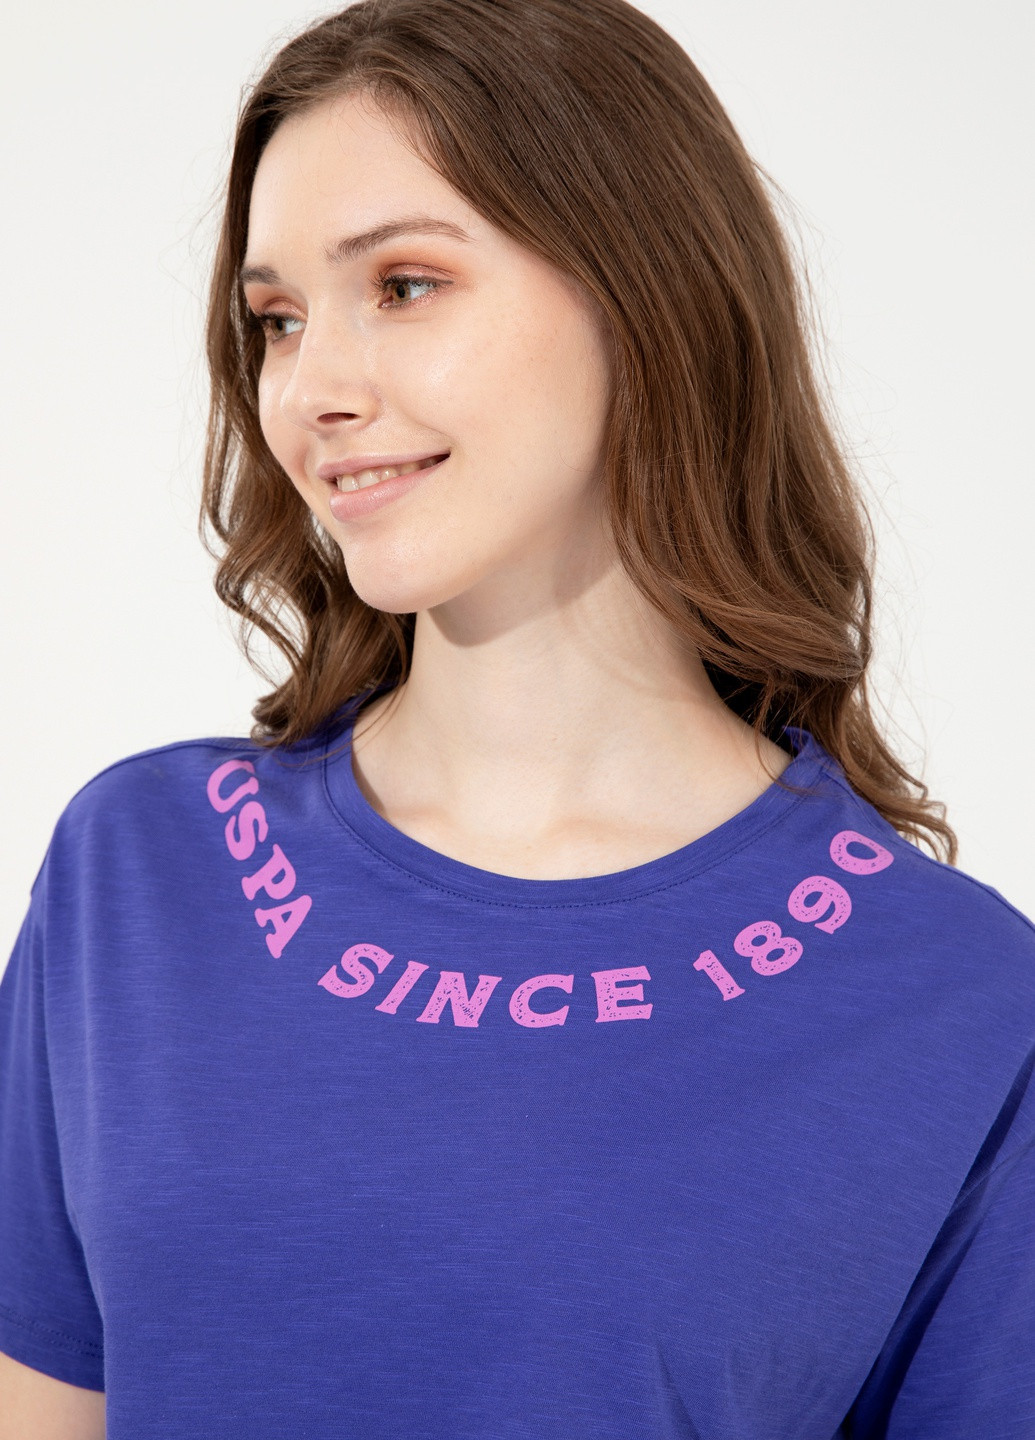 Розовая футболка u.s/ polo assn. женская U.S. Polo Assn.